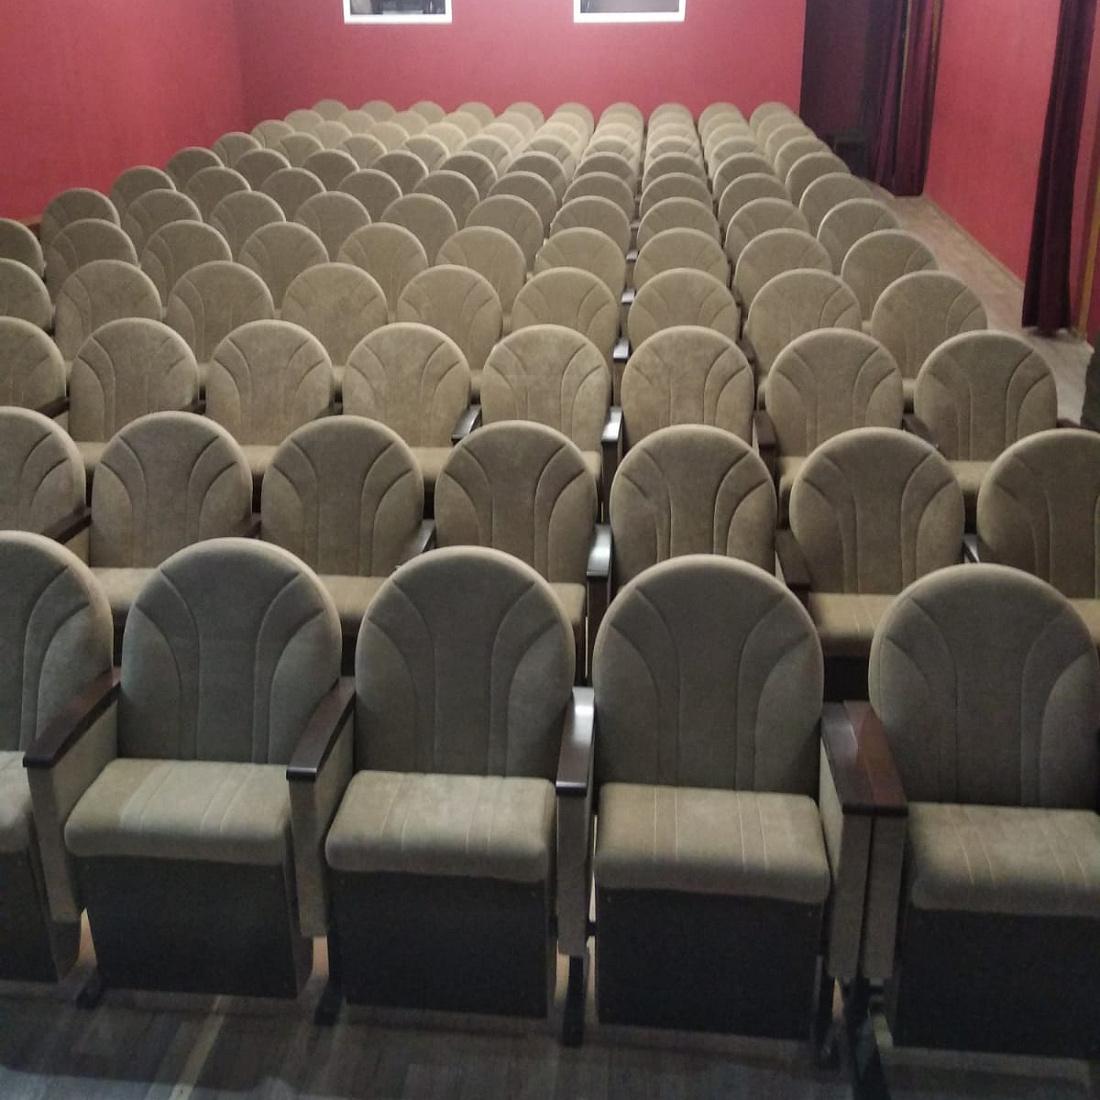 В кукольном театре Курска установили новые кресла